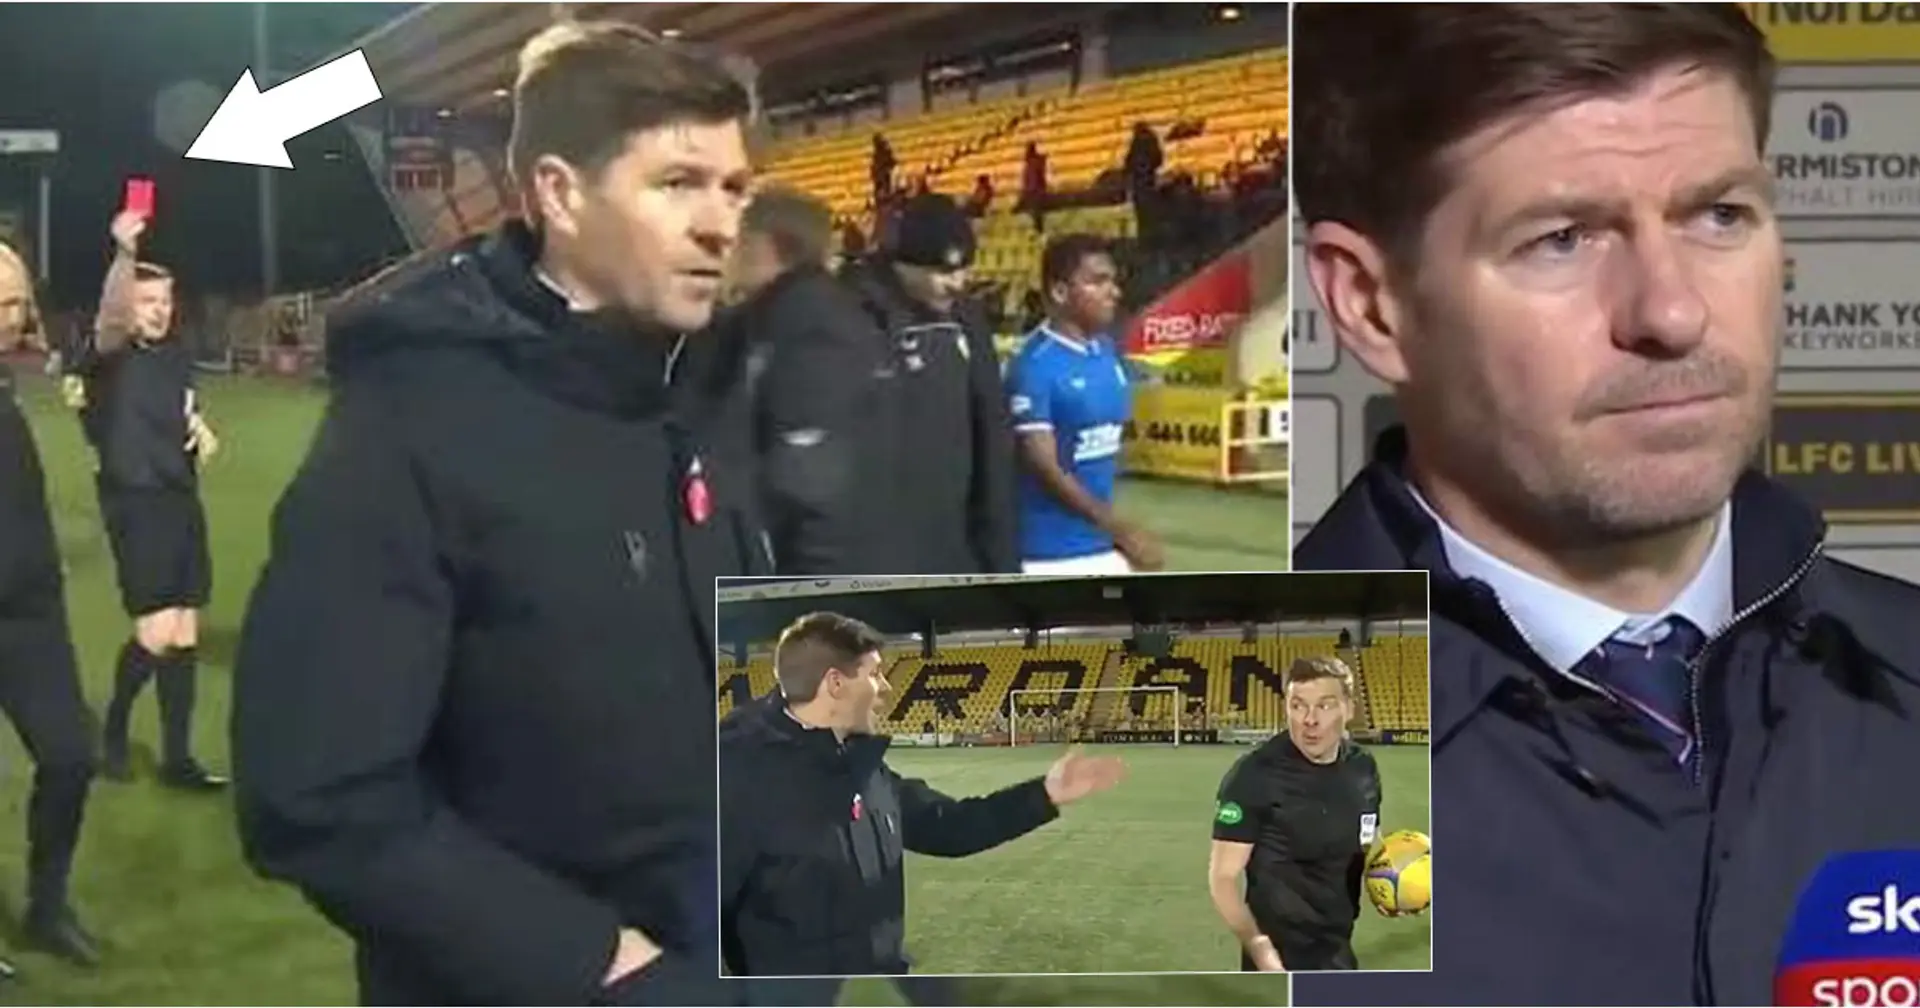 Le telecamere catturano Steven Gerrard completamente impazzito contro l'arbitro, le sue parole raccolte dai microfoni